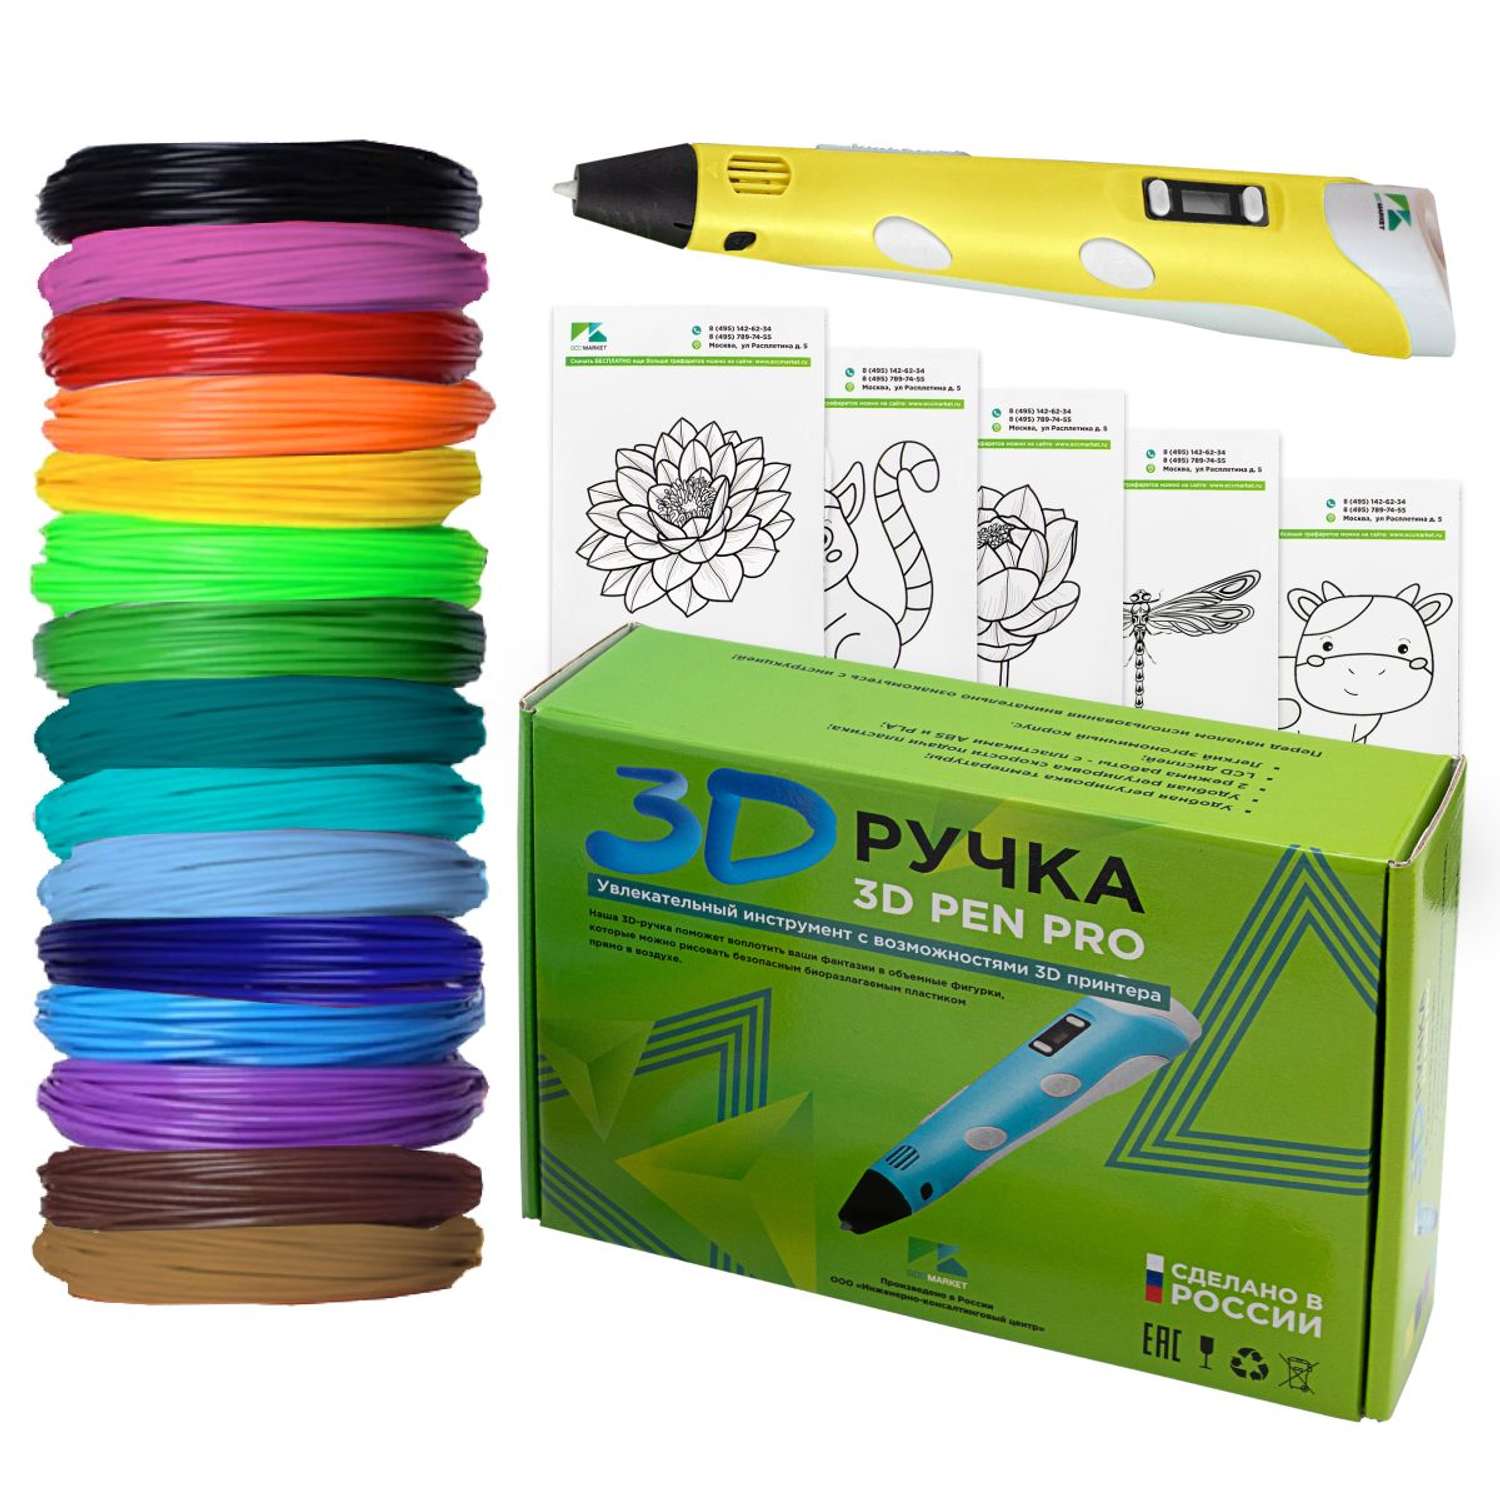 3D ручка ECC Market 3D Pen PRO 15 желтая - фото 1